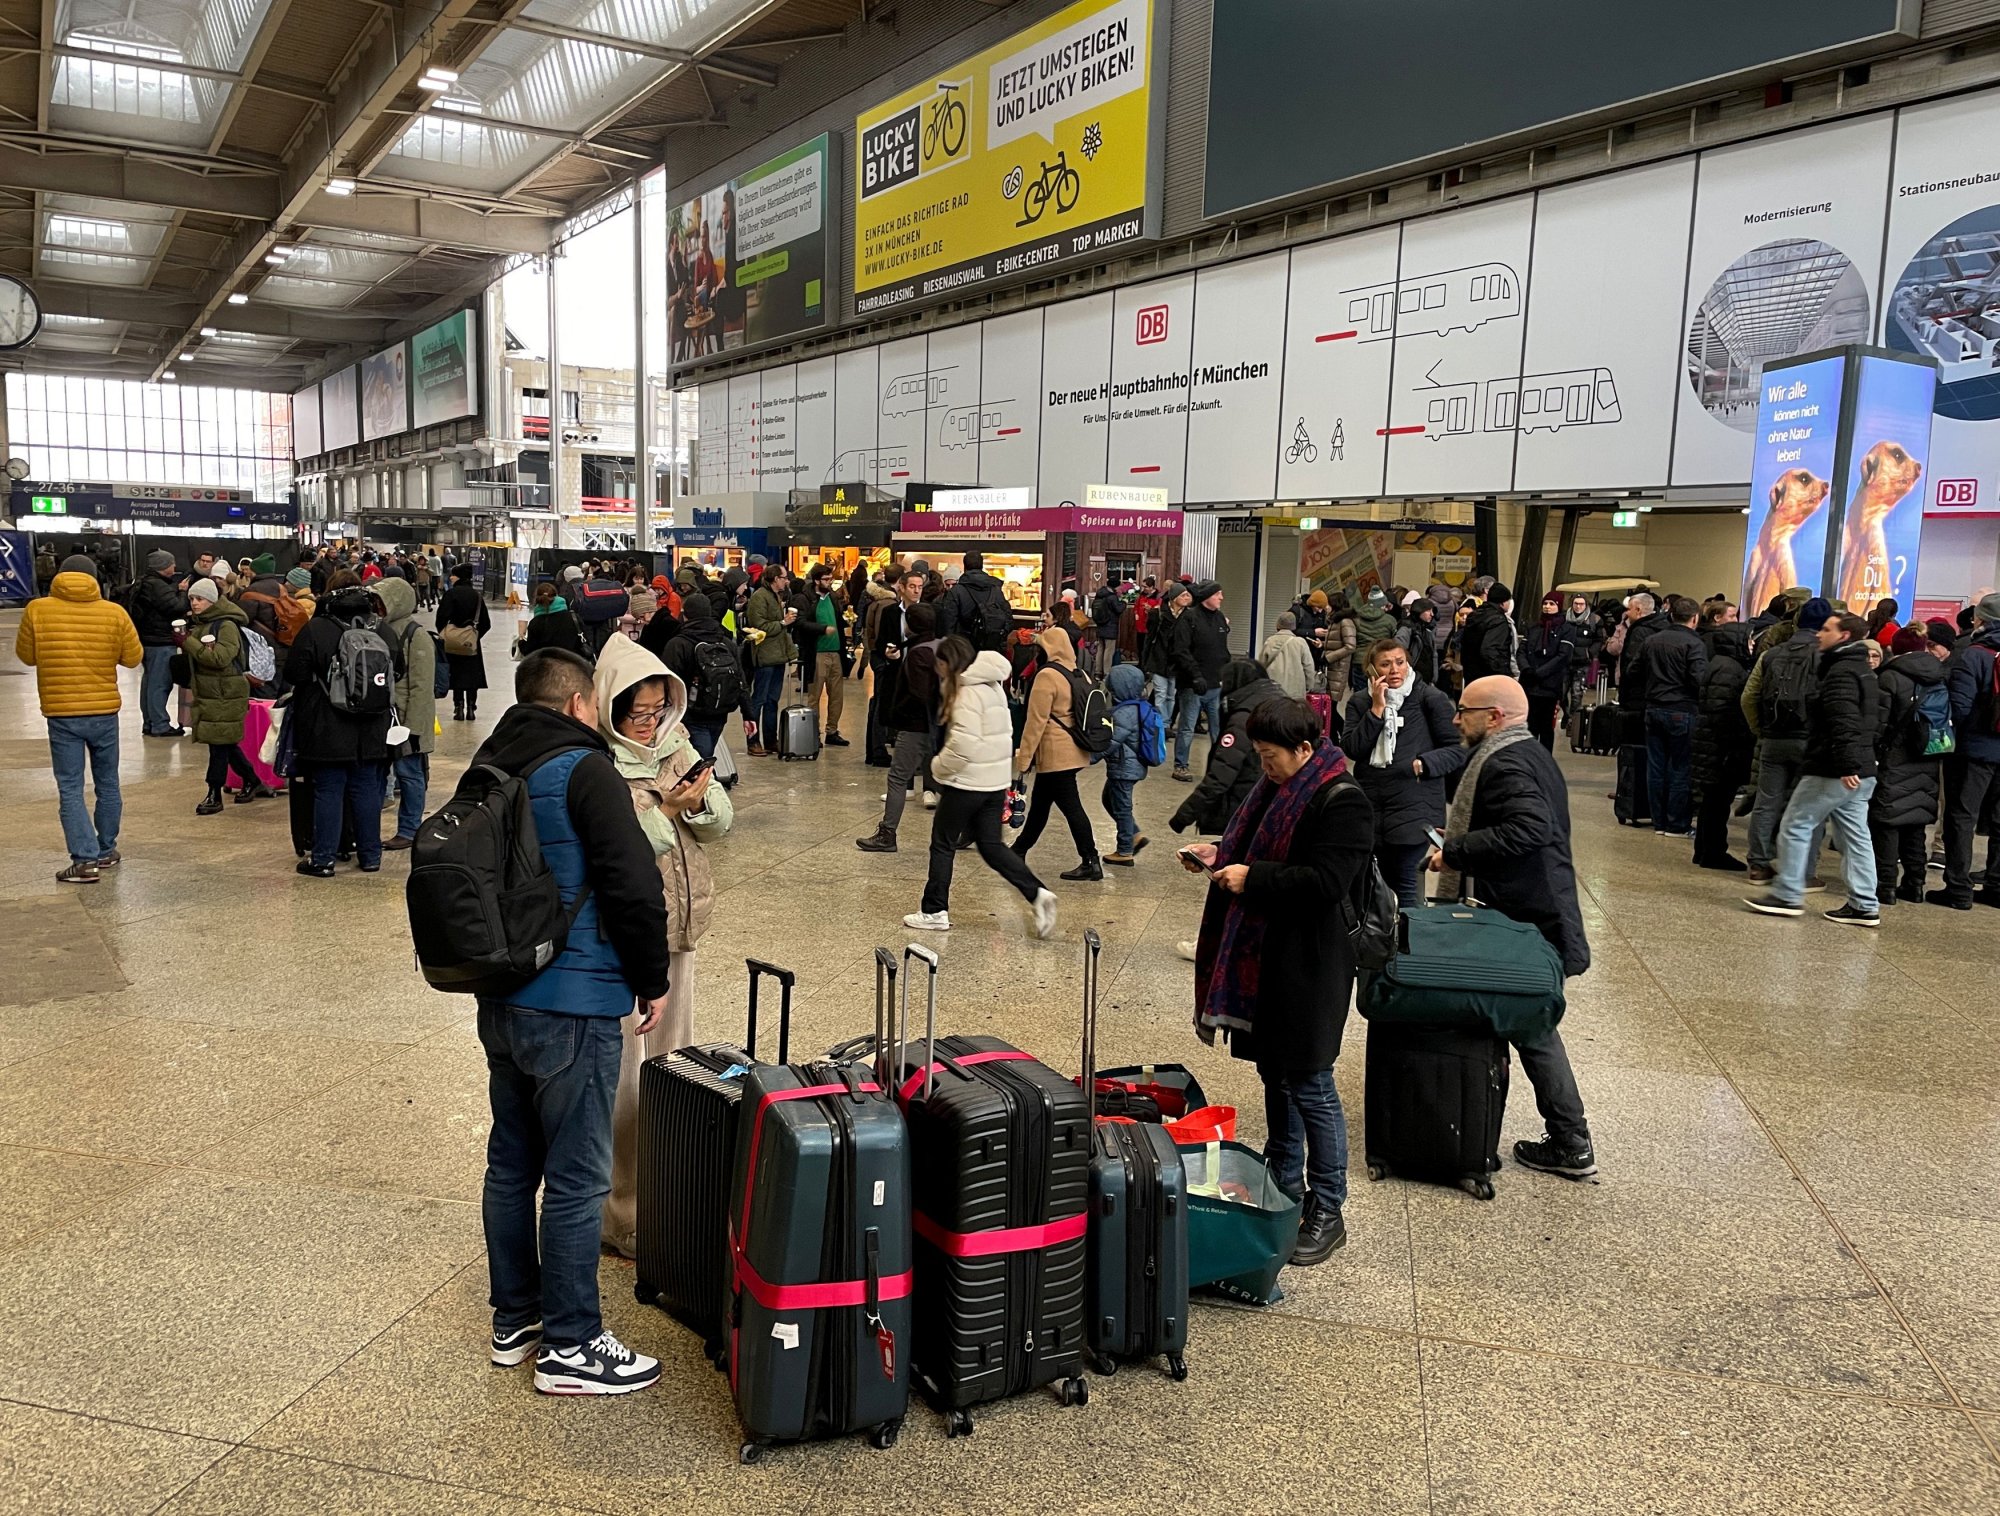 Μόναχο: Άνοιξε το αεροδρόμιο του Μονάχου - Ακόμα χωρίς τρένα